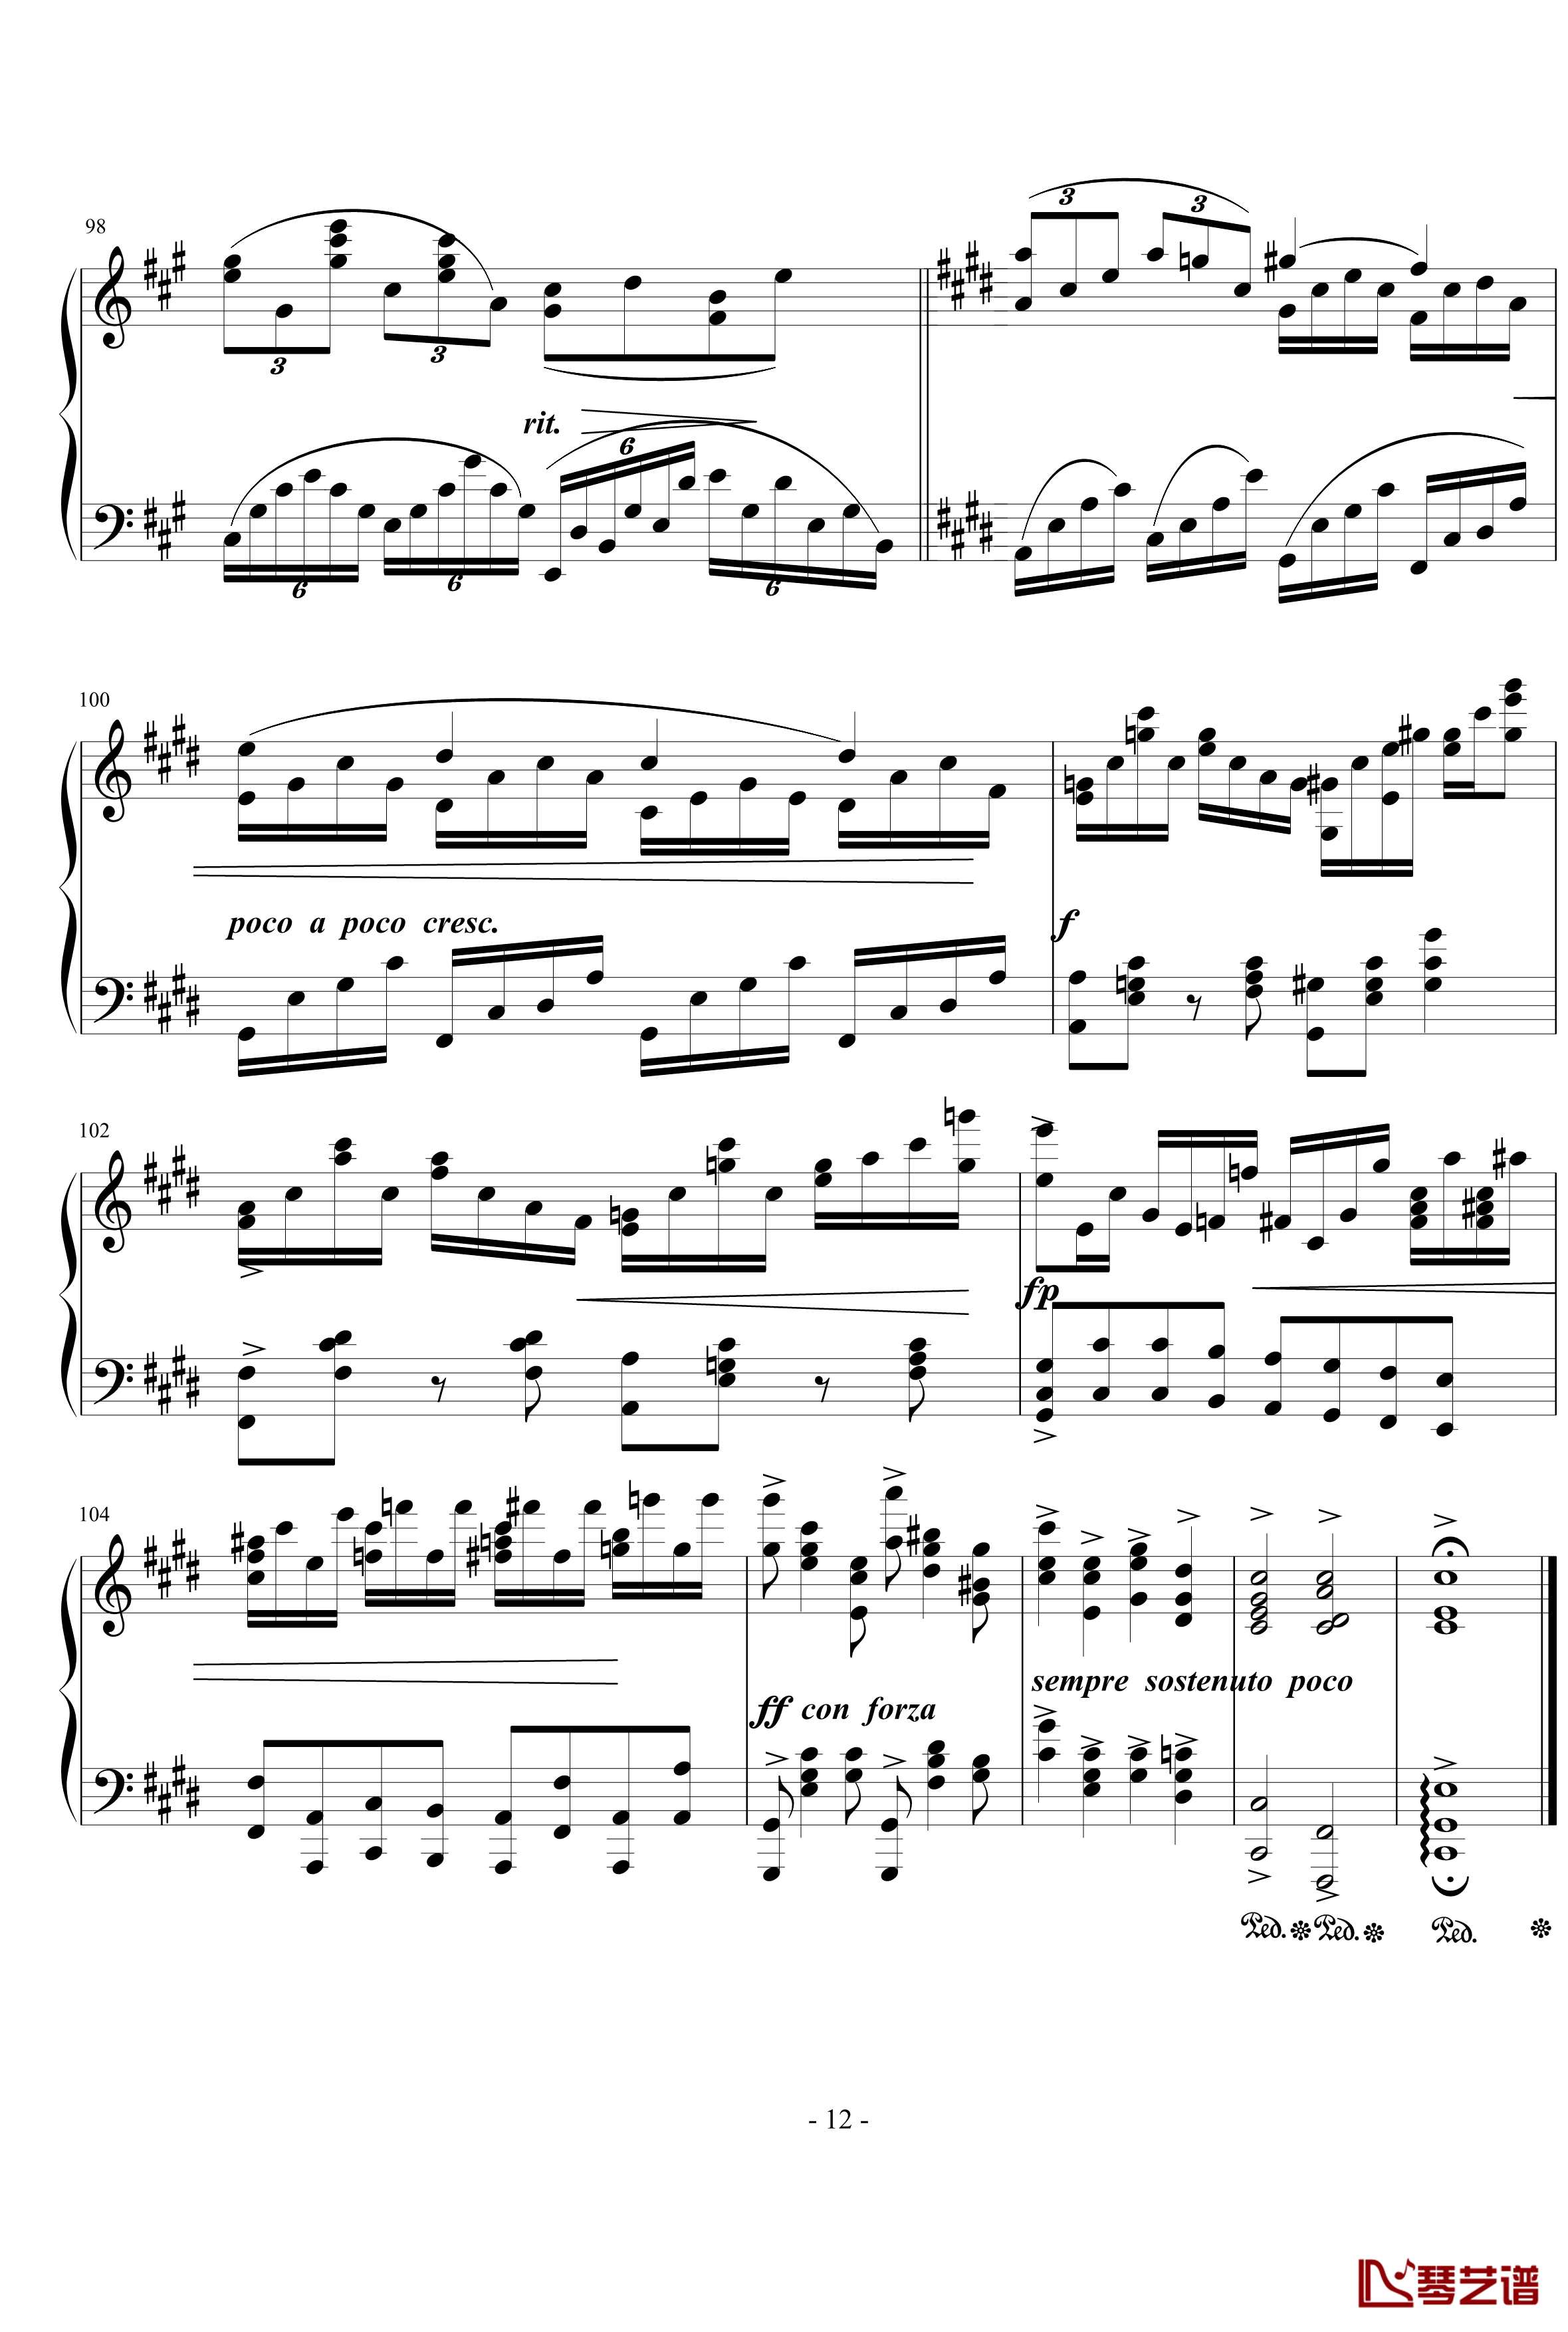 烂大俗奏鸣曲钢琴谱-1乐章-nyride12